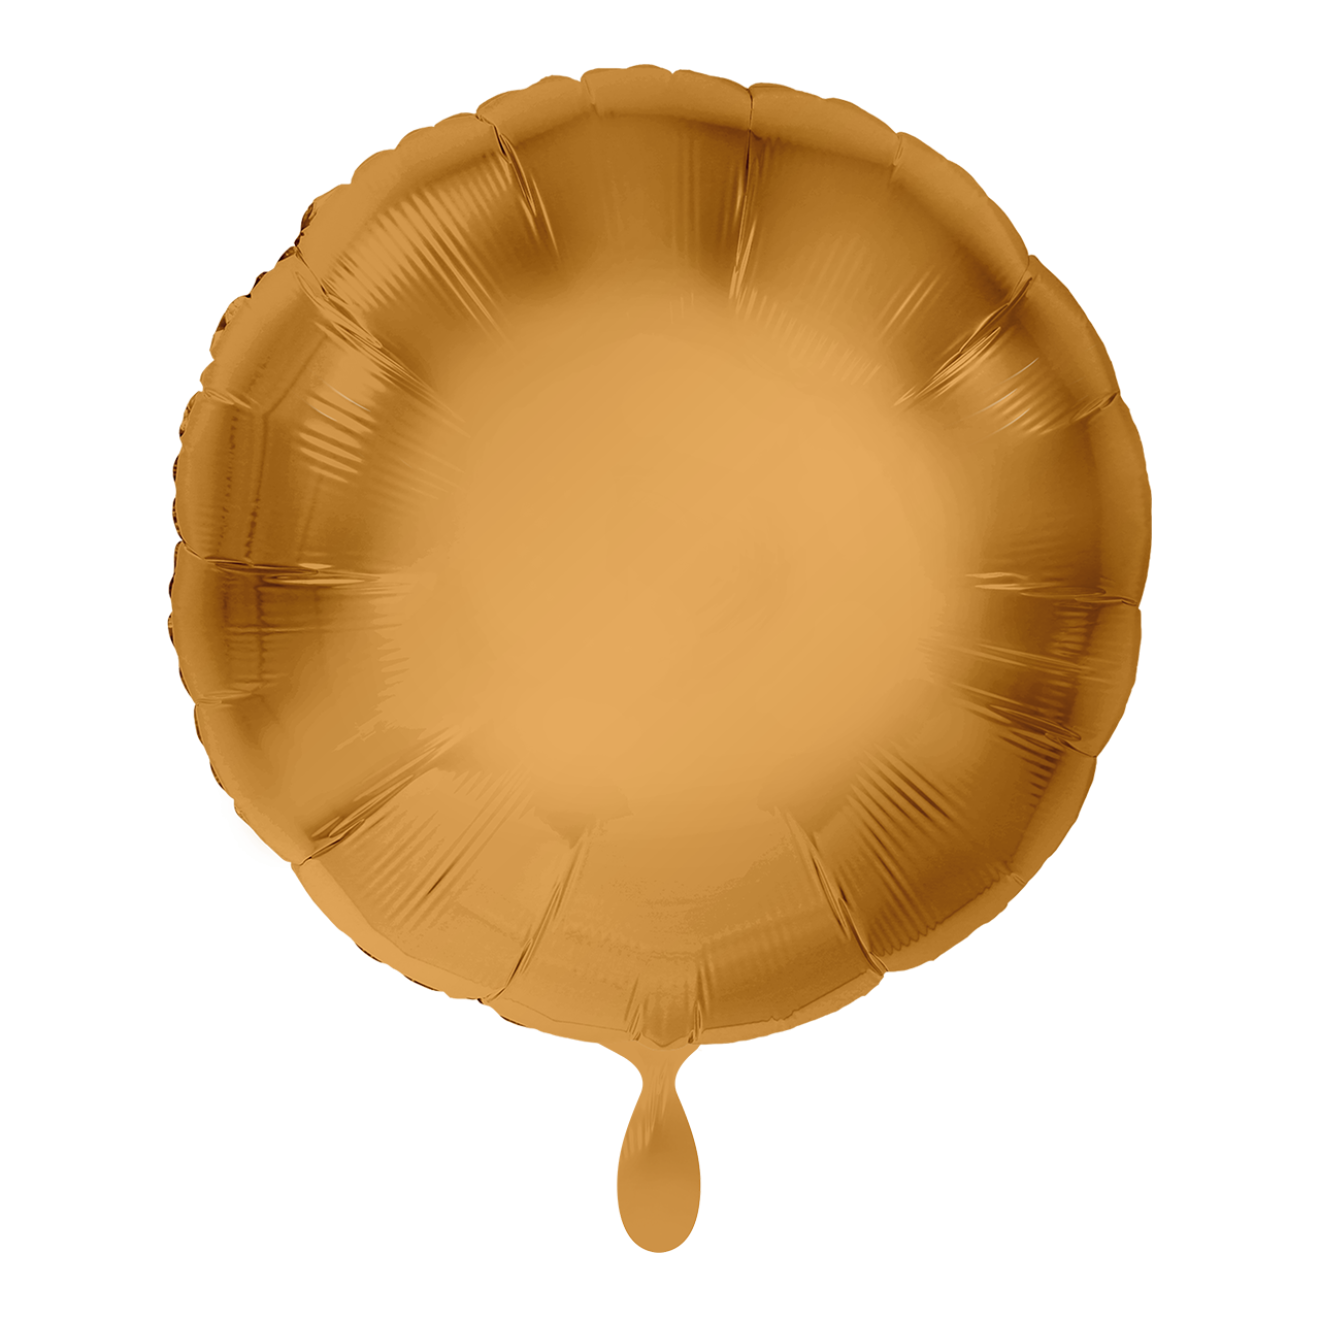 1 Balloon - Stern - Rosegold